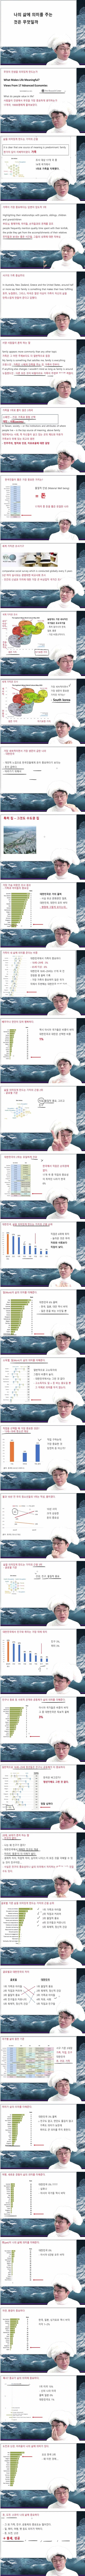 한국인이 생각하는 삶의 가치